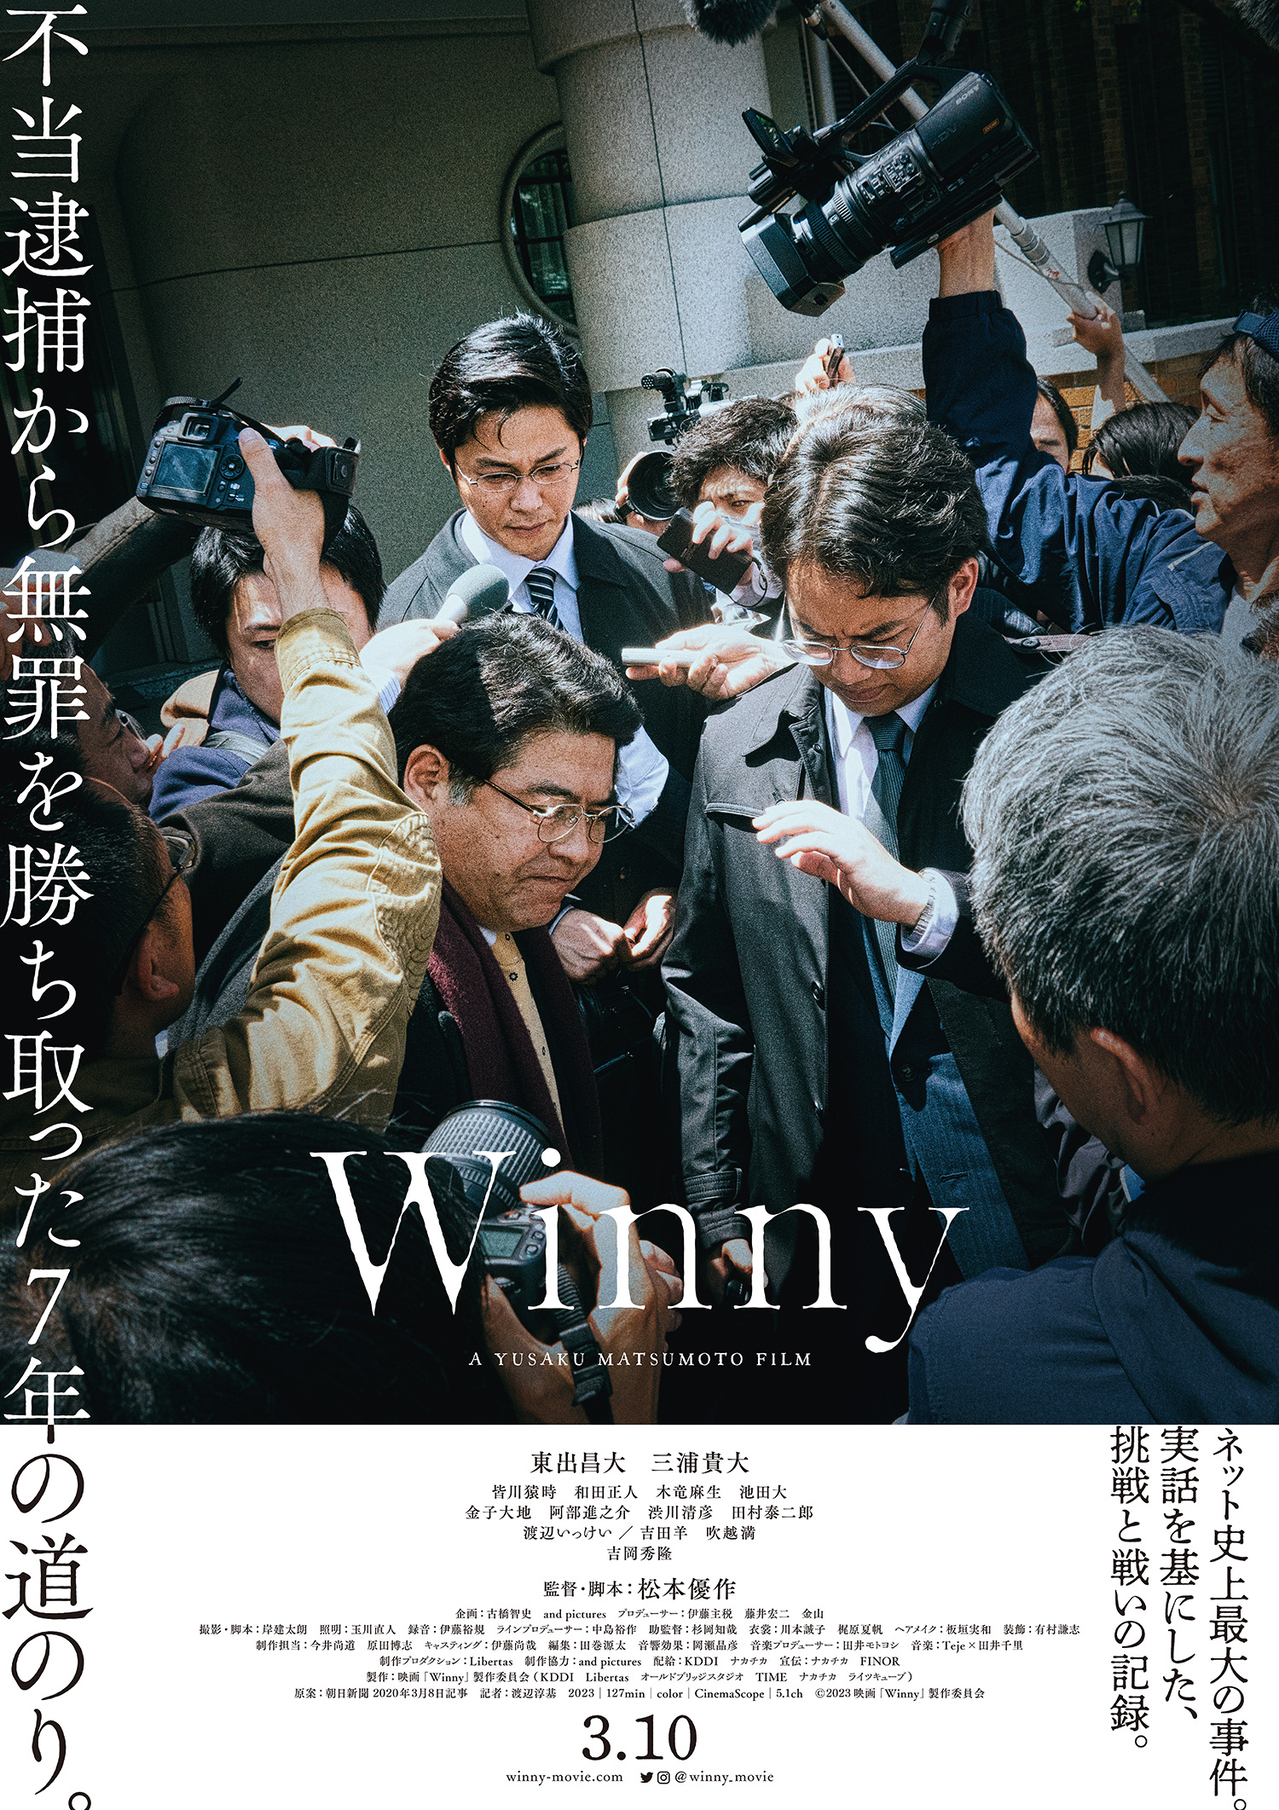 瀬々敬久監督「東出昌大の気概と迫力、素晴らしい」　「Winny」著名人のコメント公開